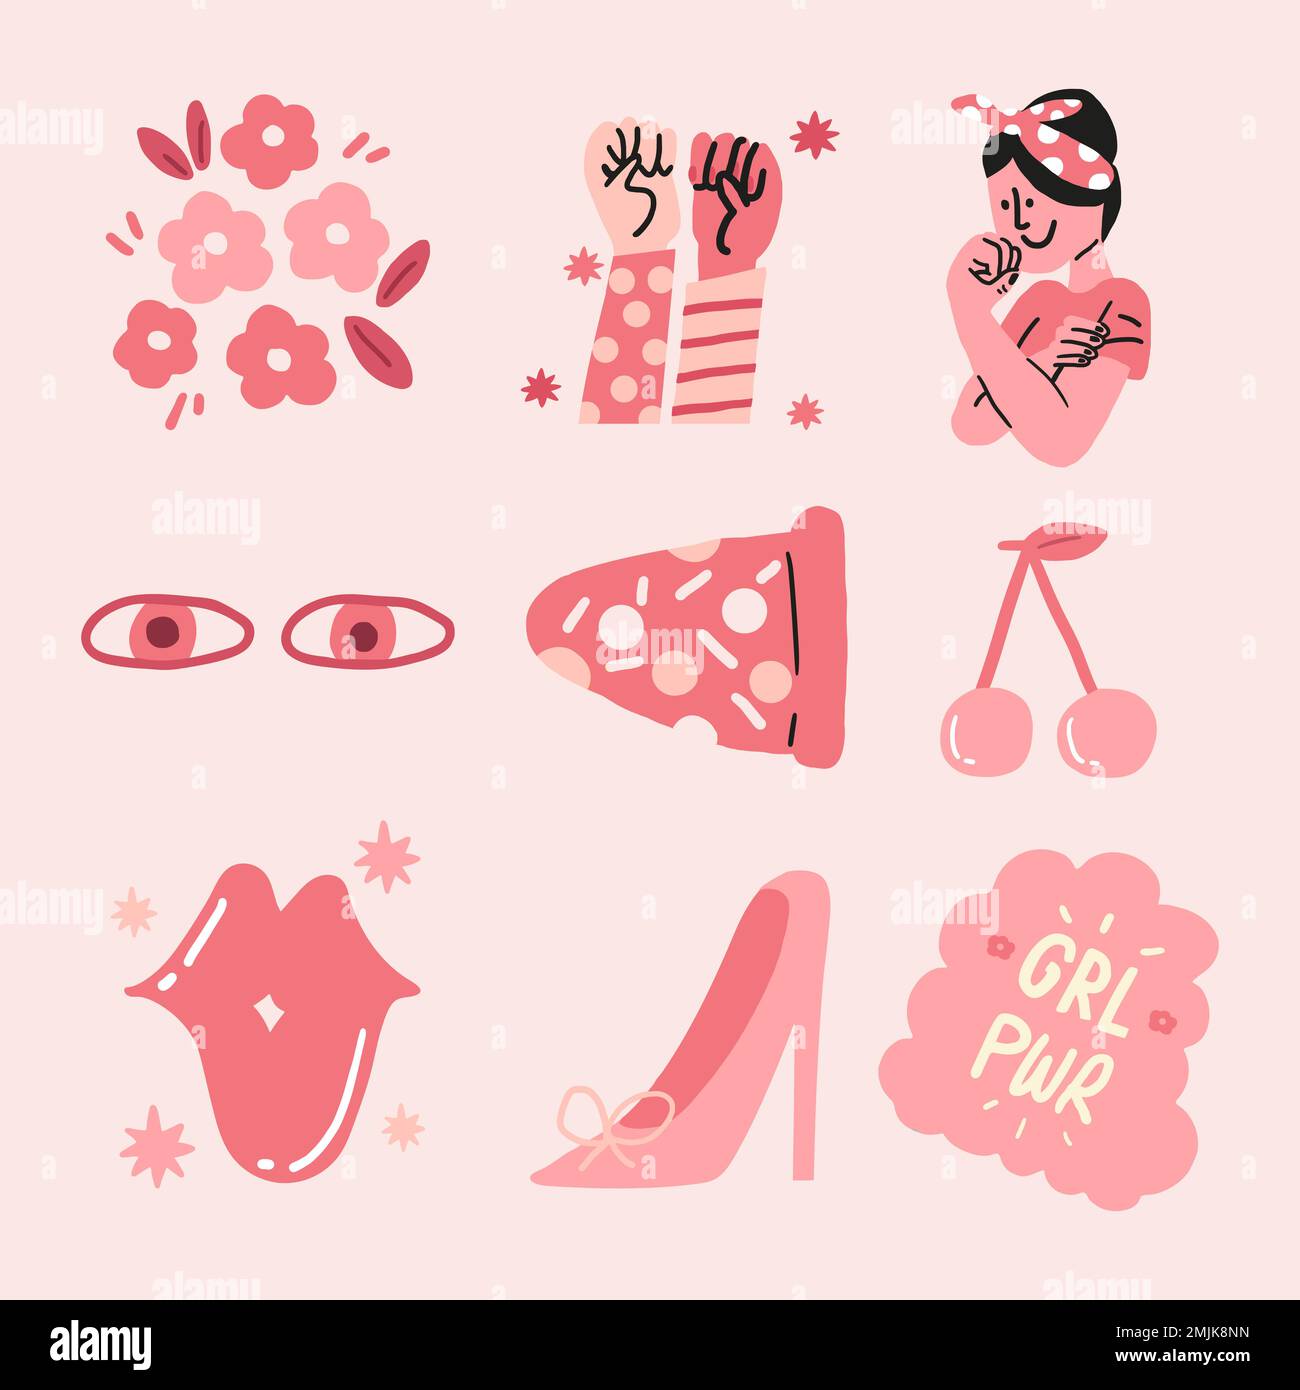 Girl Power Sticker Vektor in rosa monochrom gesetzt Stock Vektor